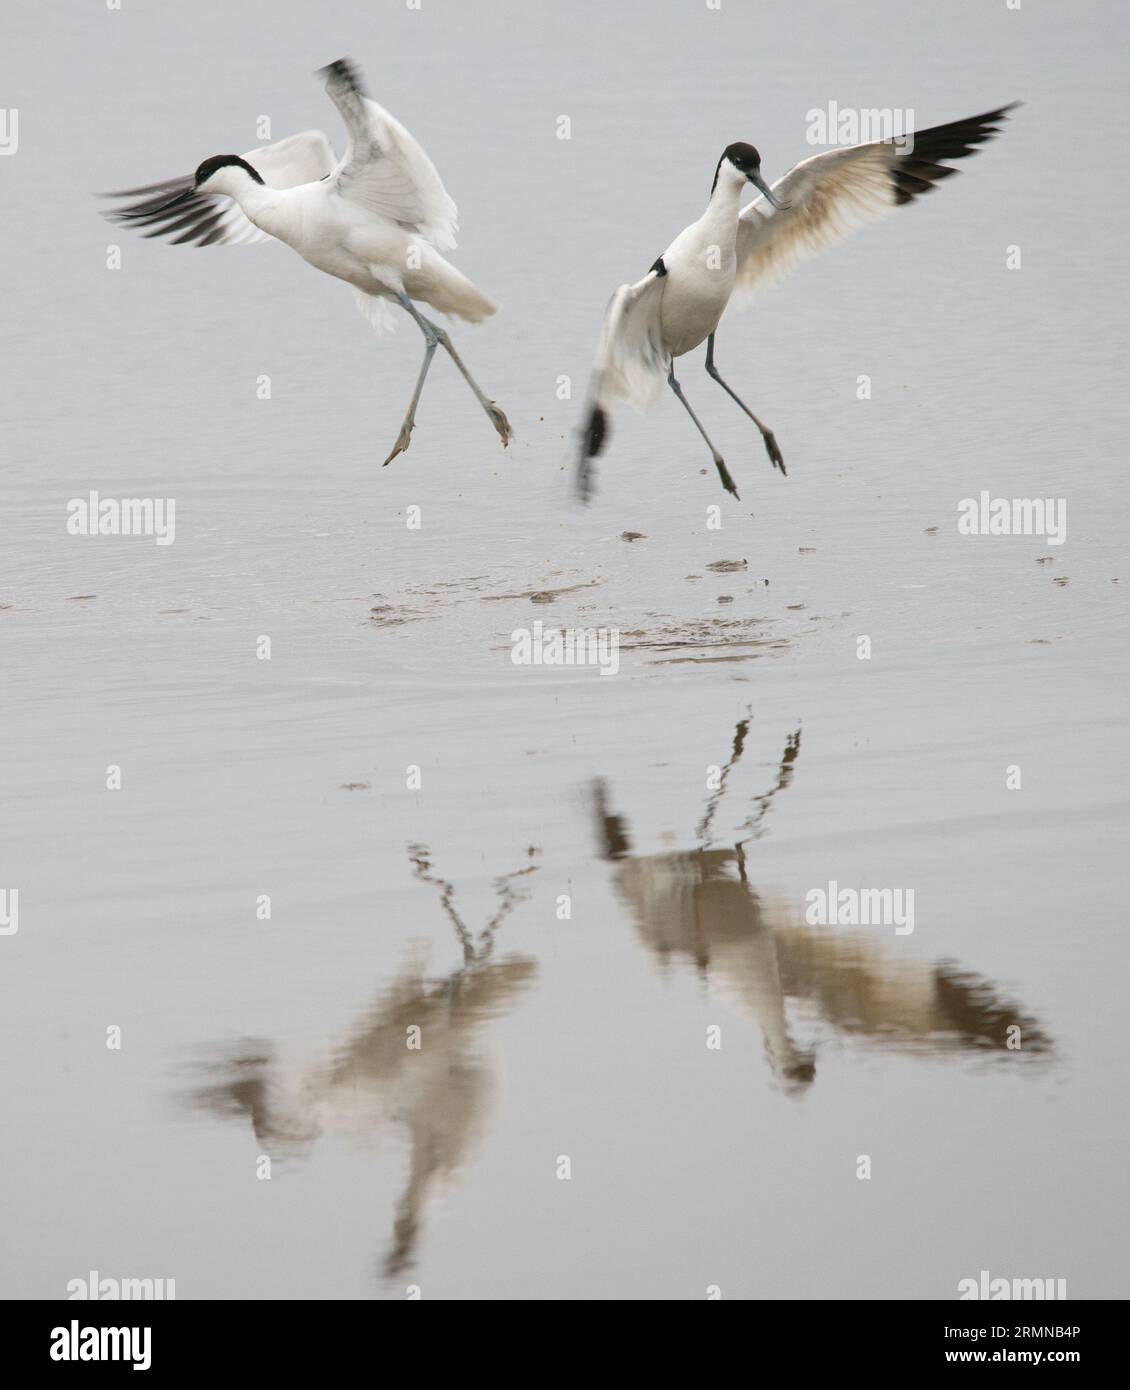 Immagine quadrata di due avocetti che ballano l'uno dall'altro con le ali tese e riflessi in acqua Foto Stock